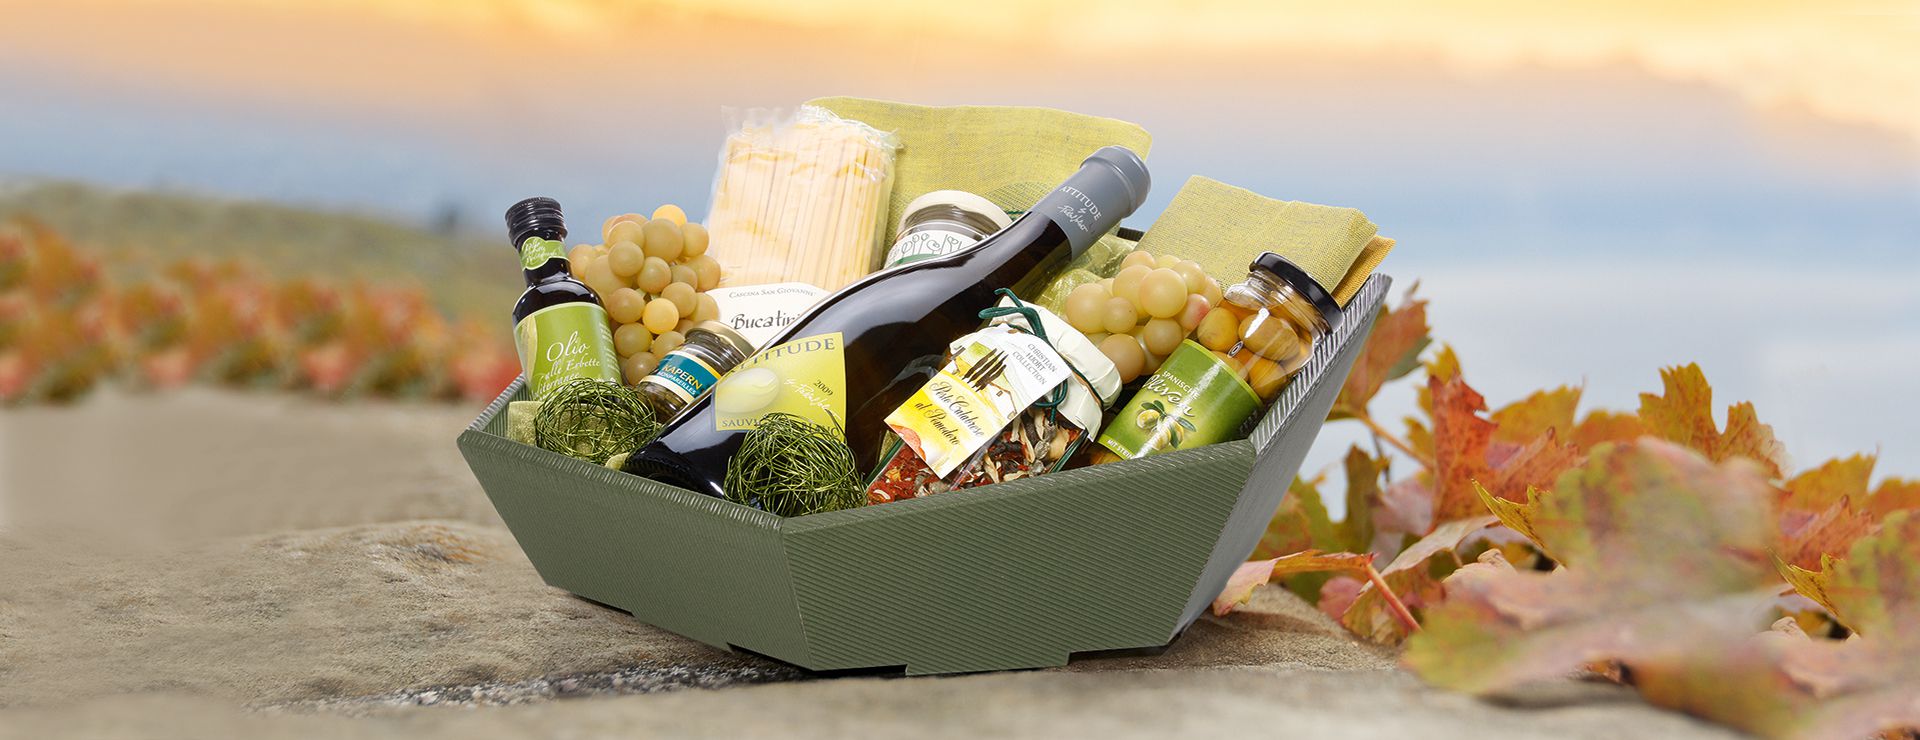 Zeshoekige geschenkmand van open golfkarton en schuine voorkant met witte wijn en olijven.